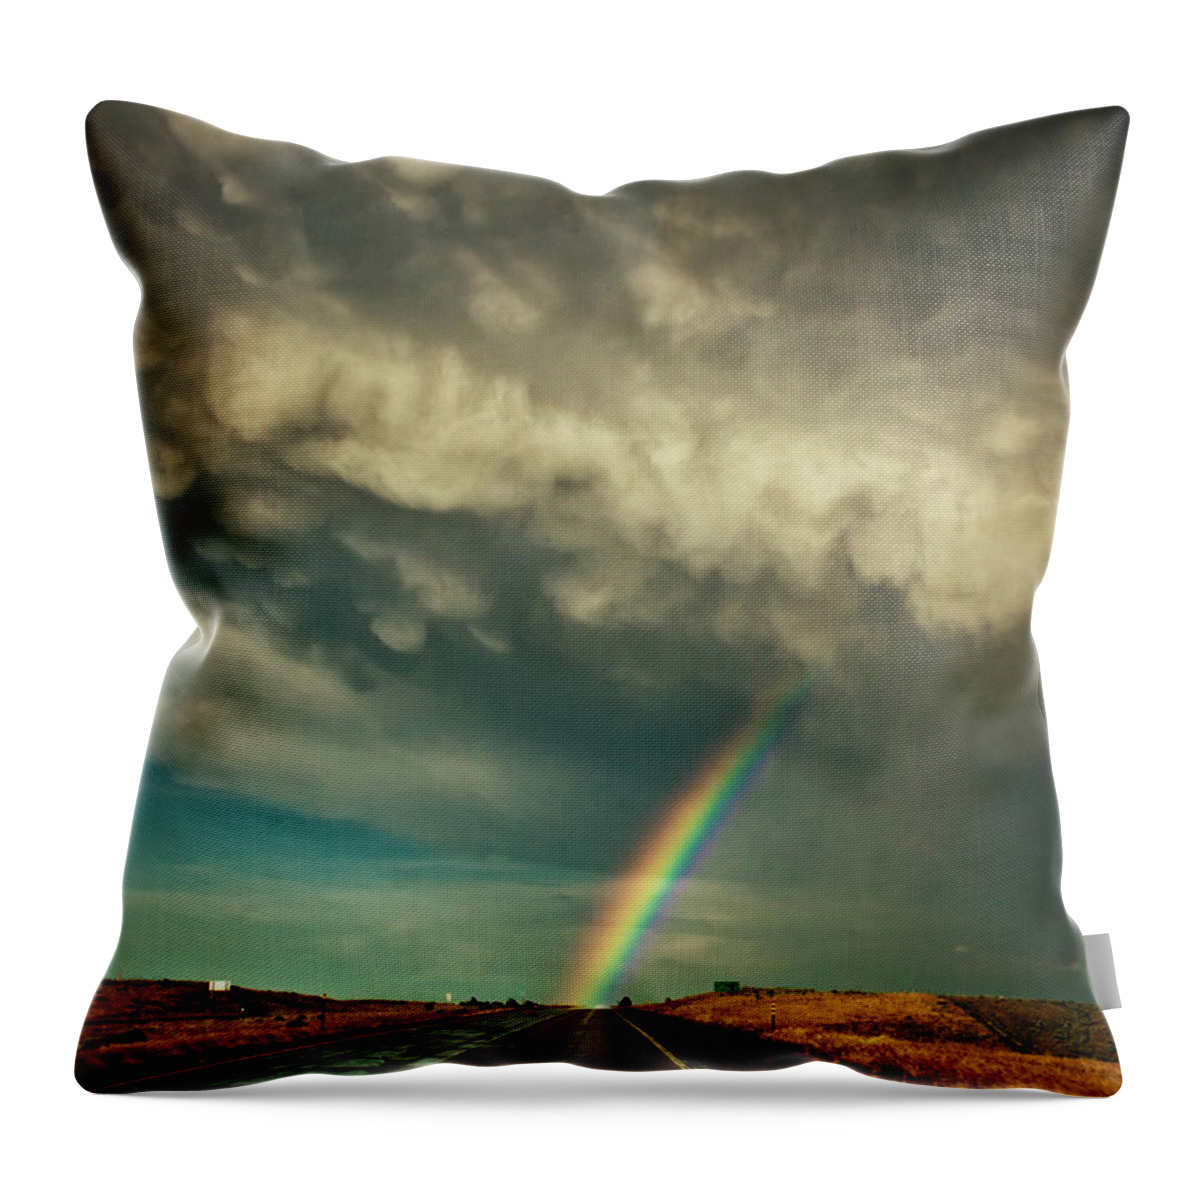 Colorado Throw Pillow featuring the photograph Into The Storm by John De Bord